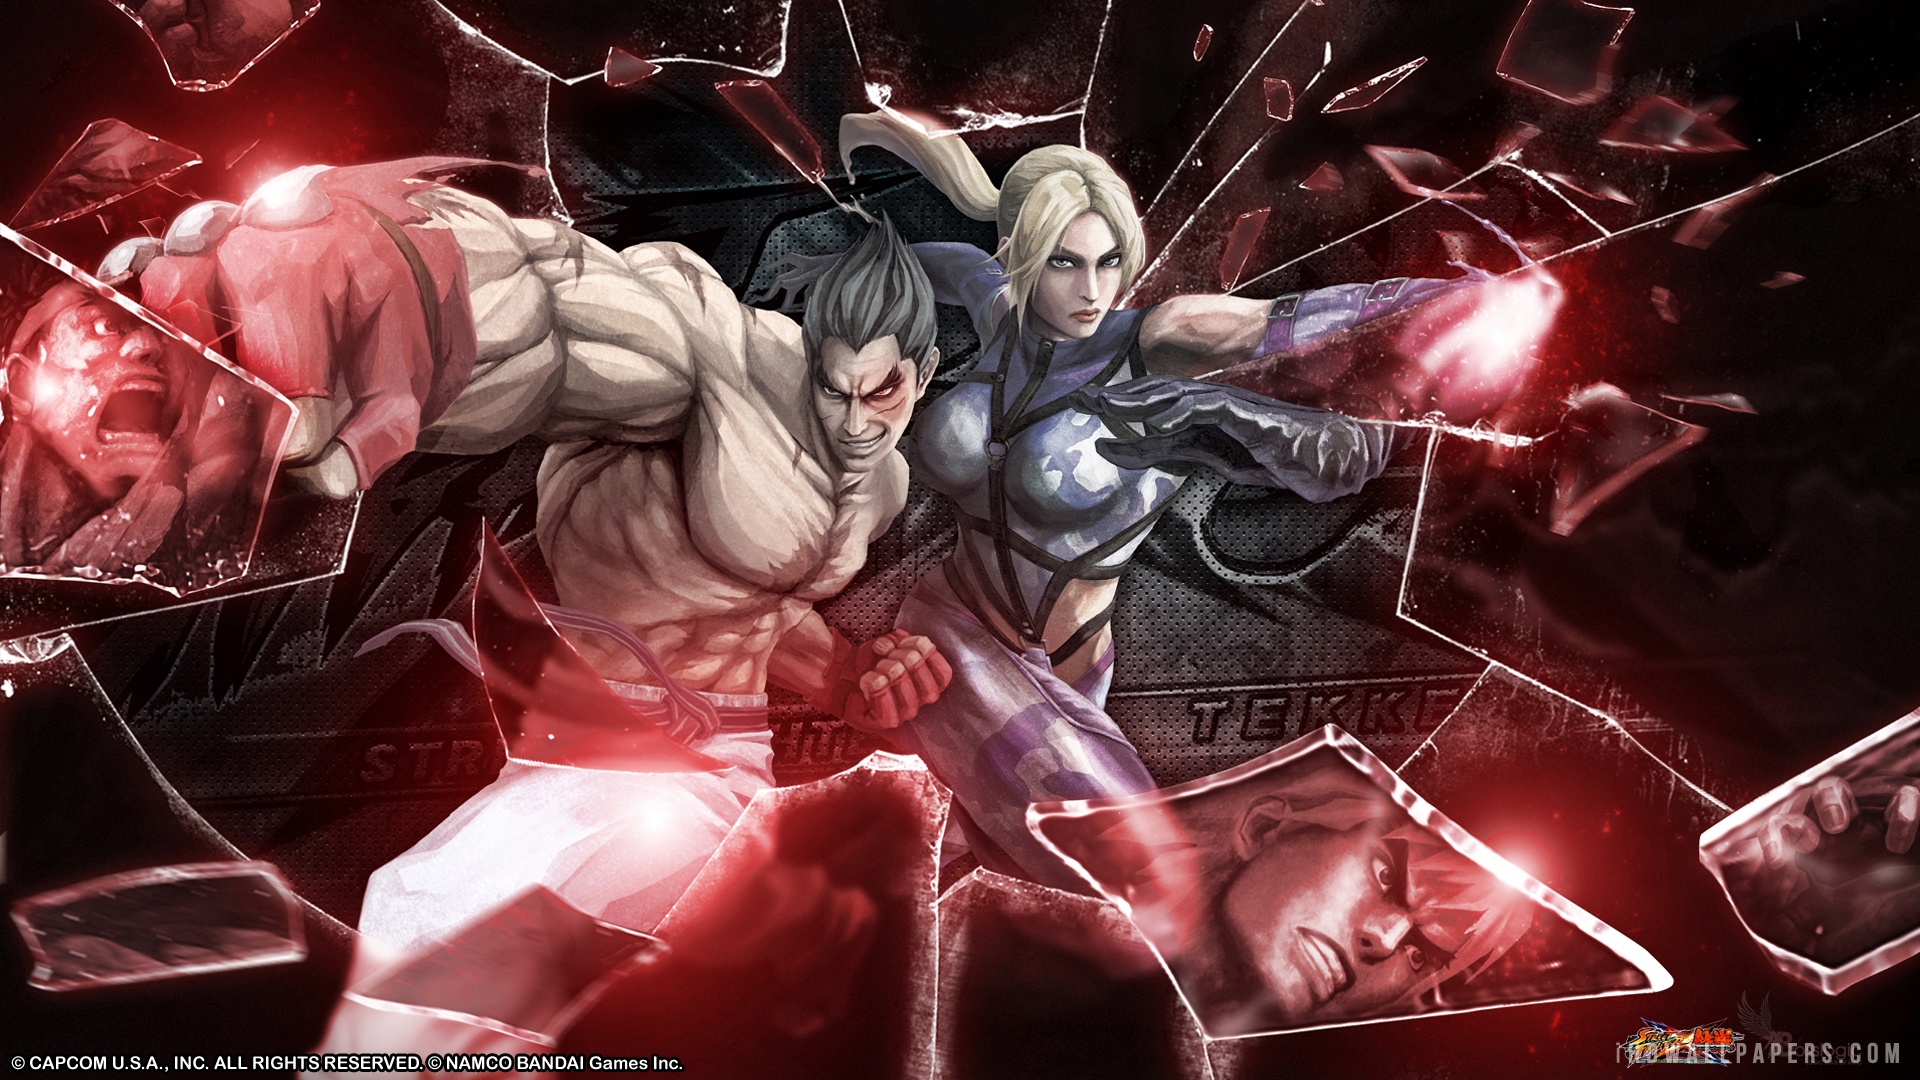 Kazuya Nina Street Fighter X Tekken Wallpaper From The